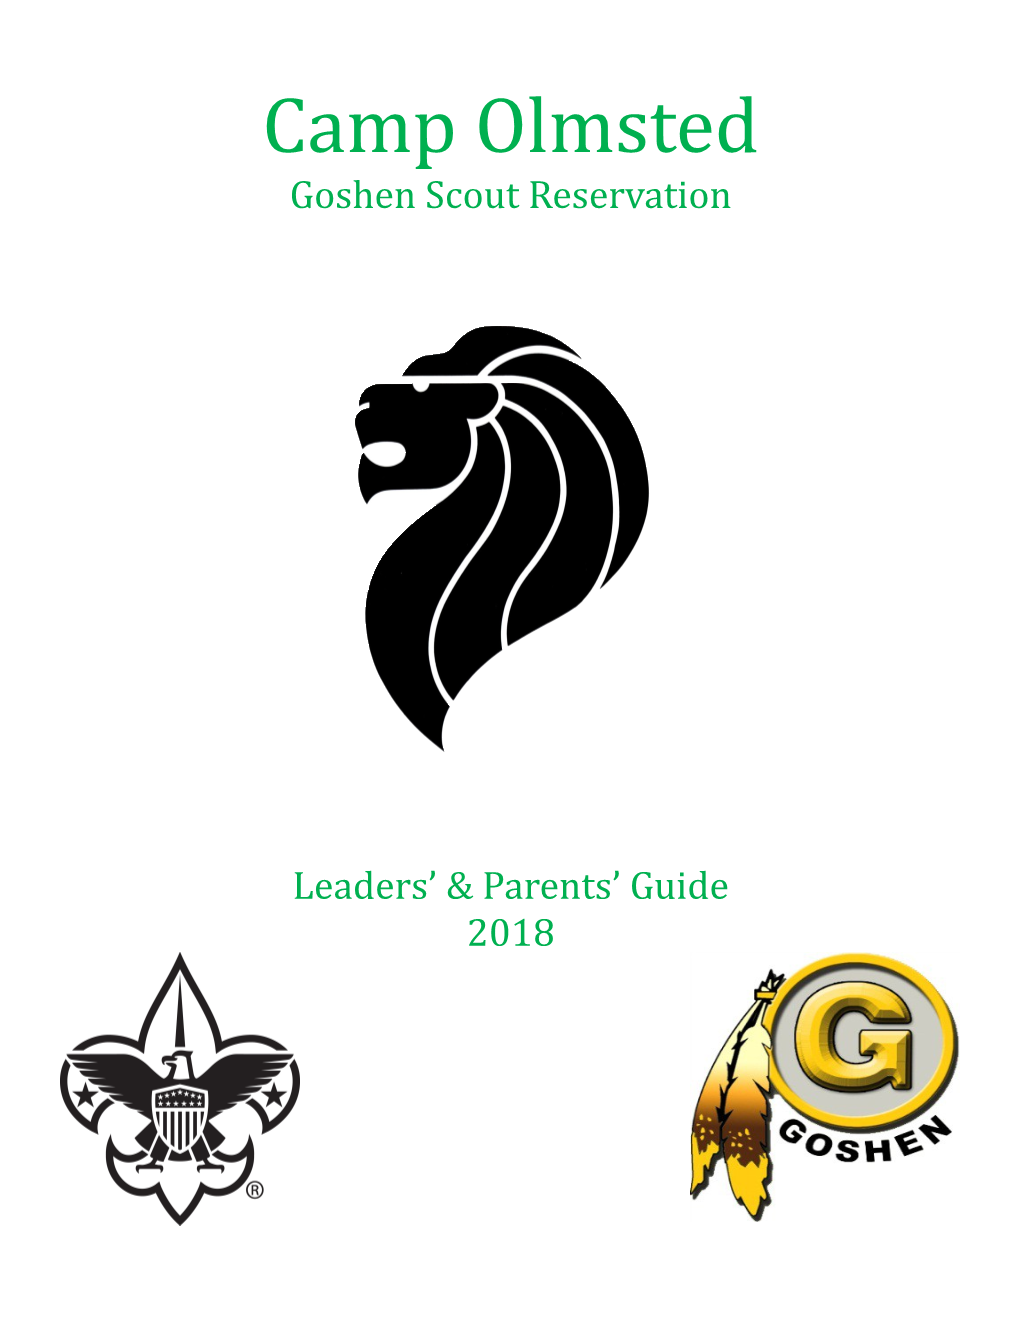 Camp Olmsted Goshen Scout Reservation